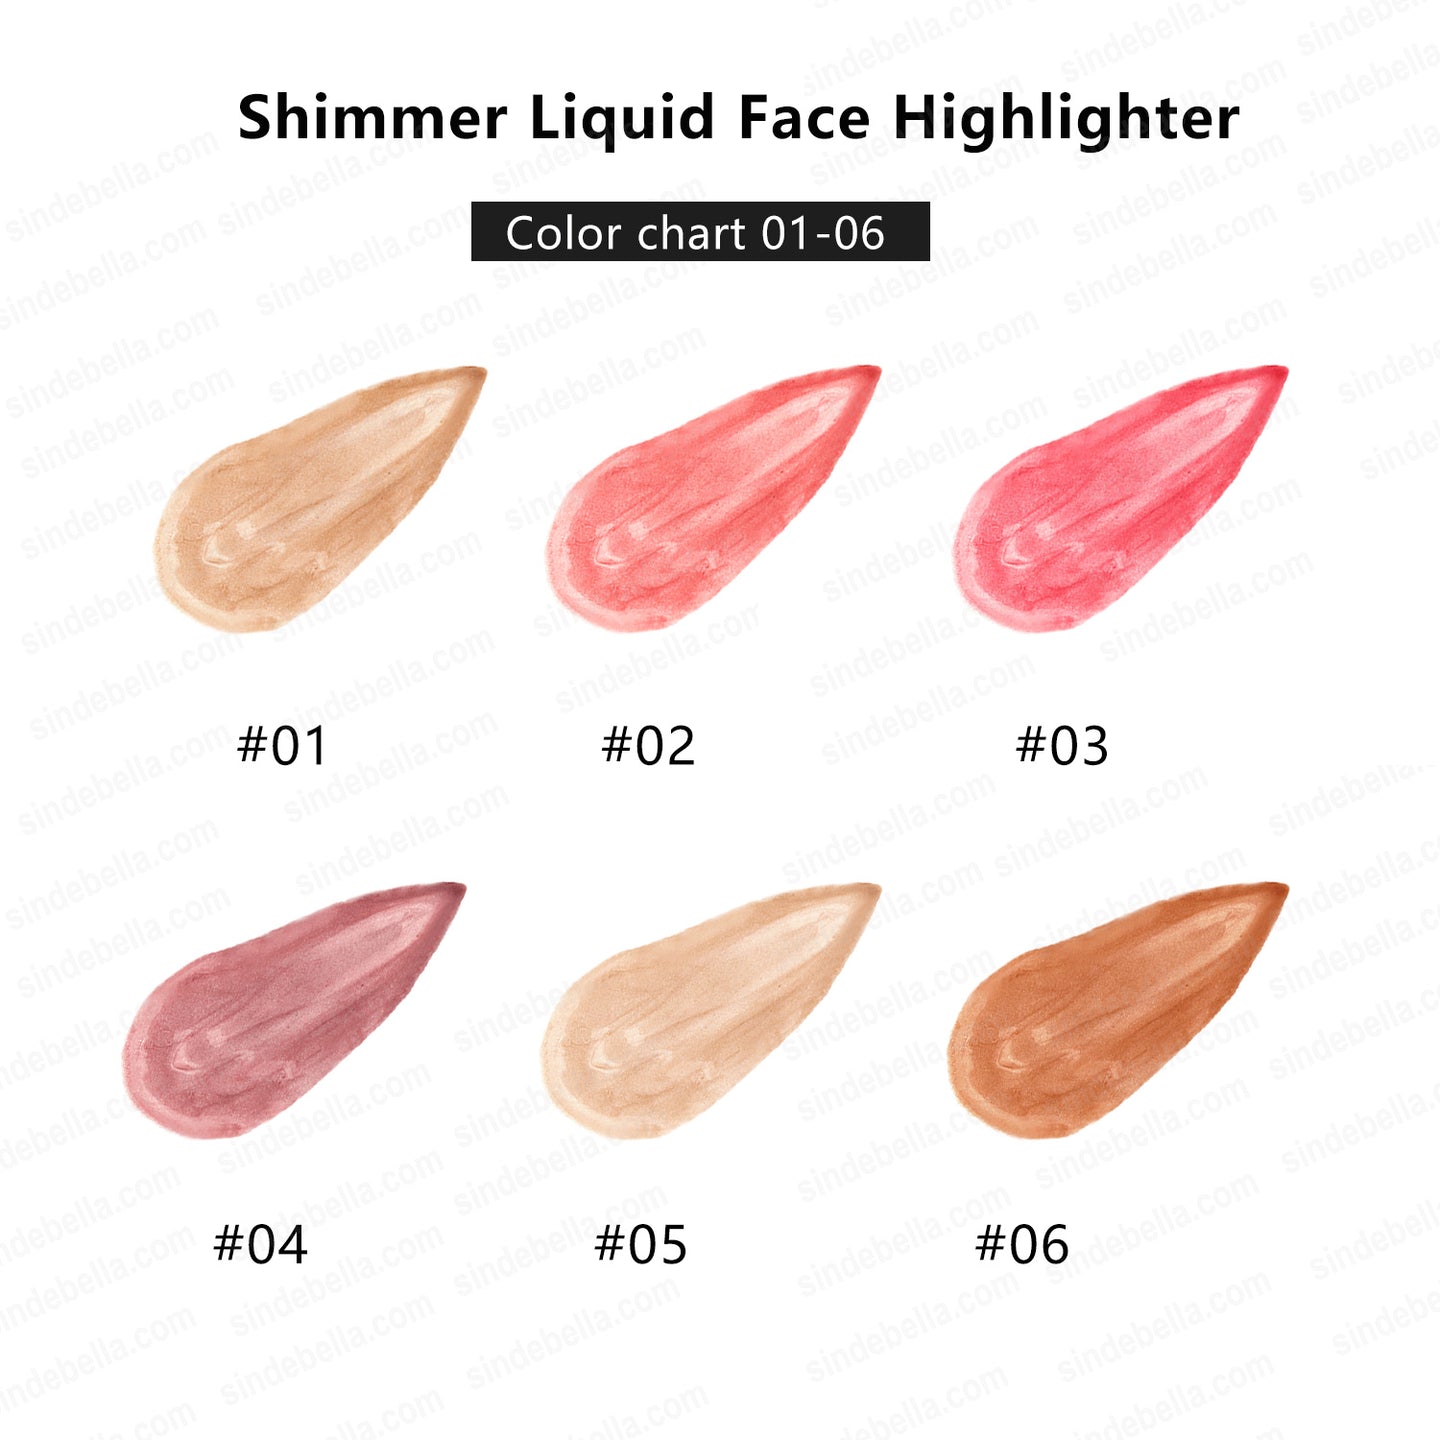 Shimmer Liquid Face Highlighter mit weichem Kissen-Applikator